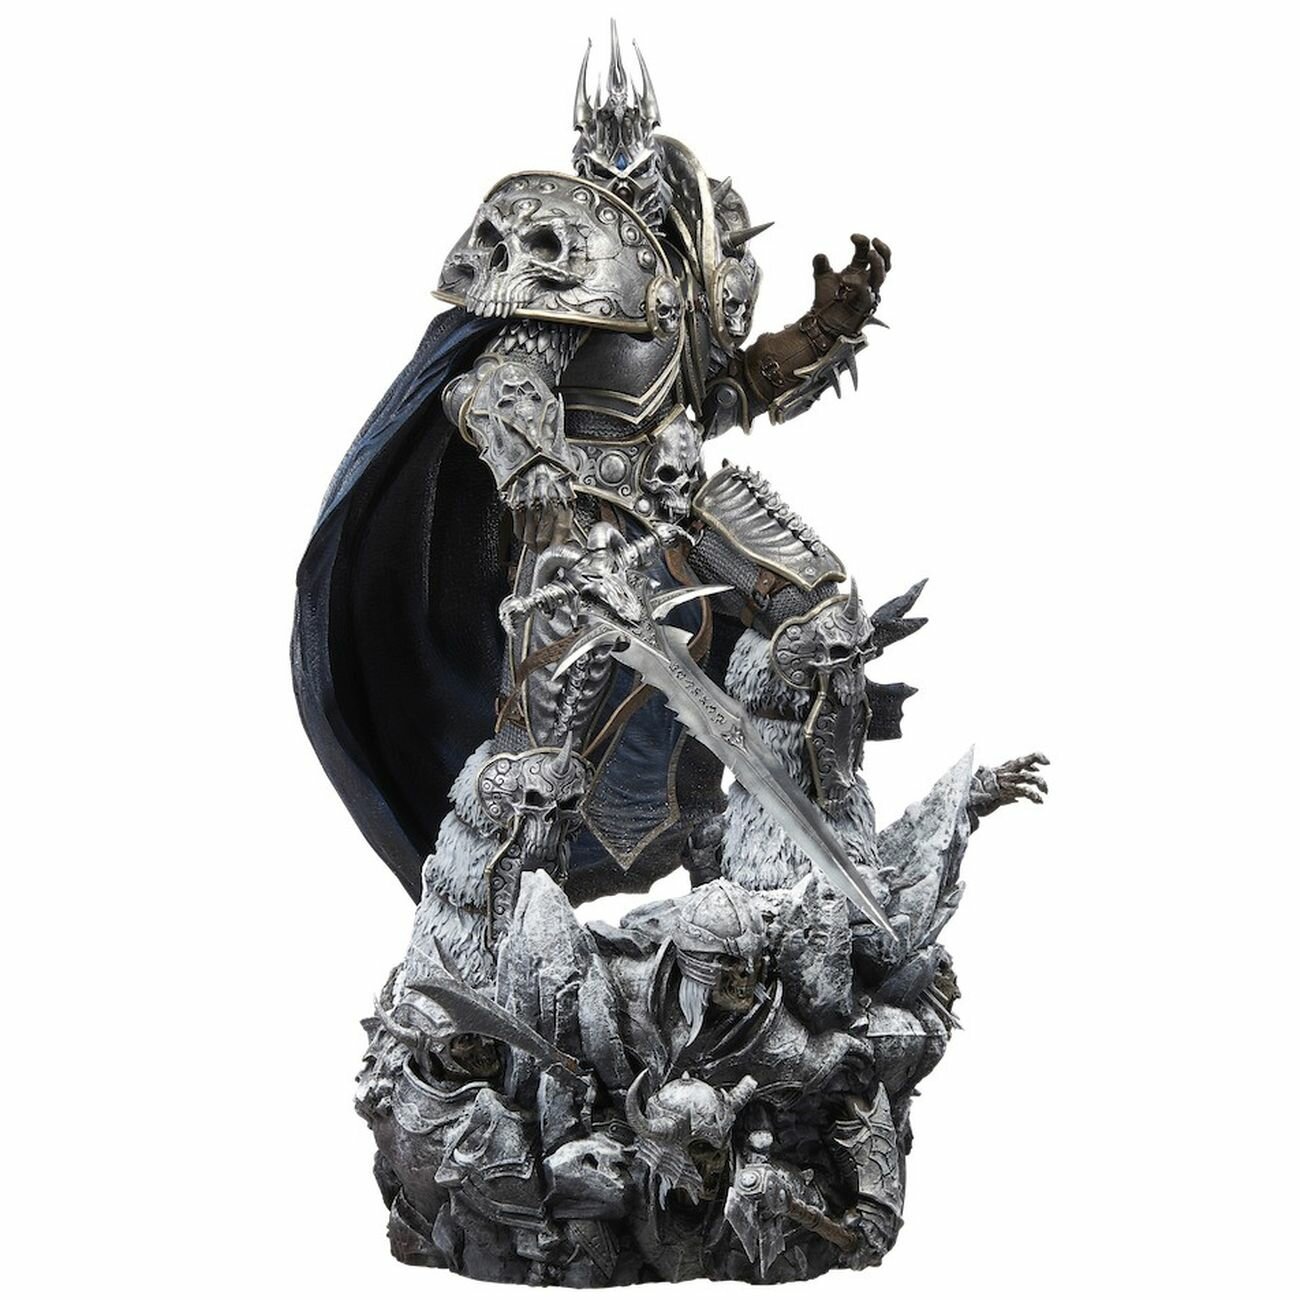 Фигурка Blizzard World of Warcraft: Lich King Arthas Premium